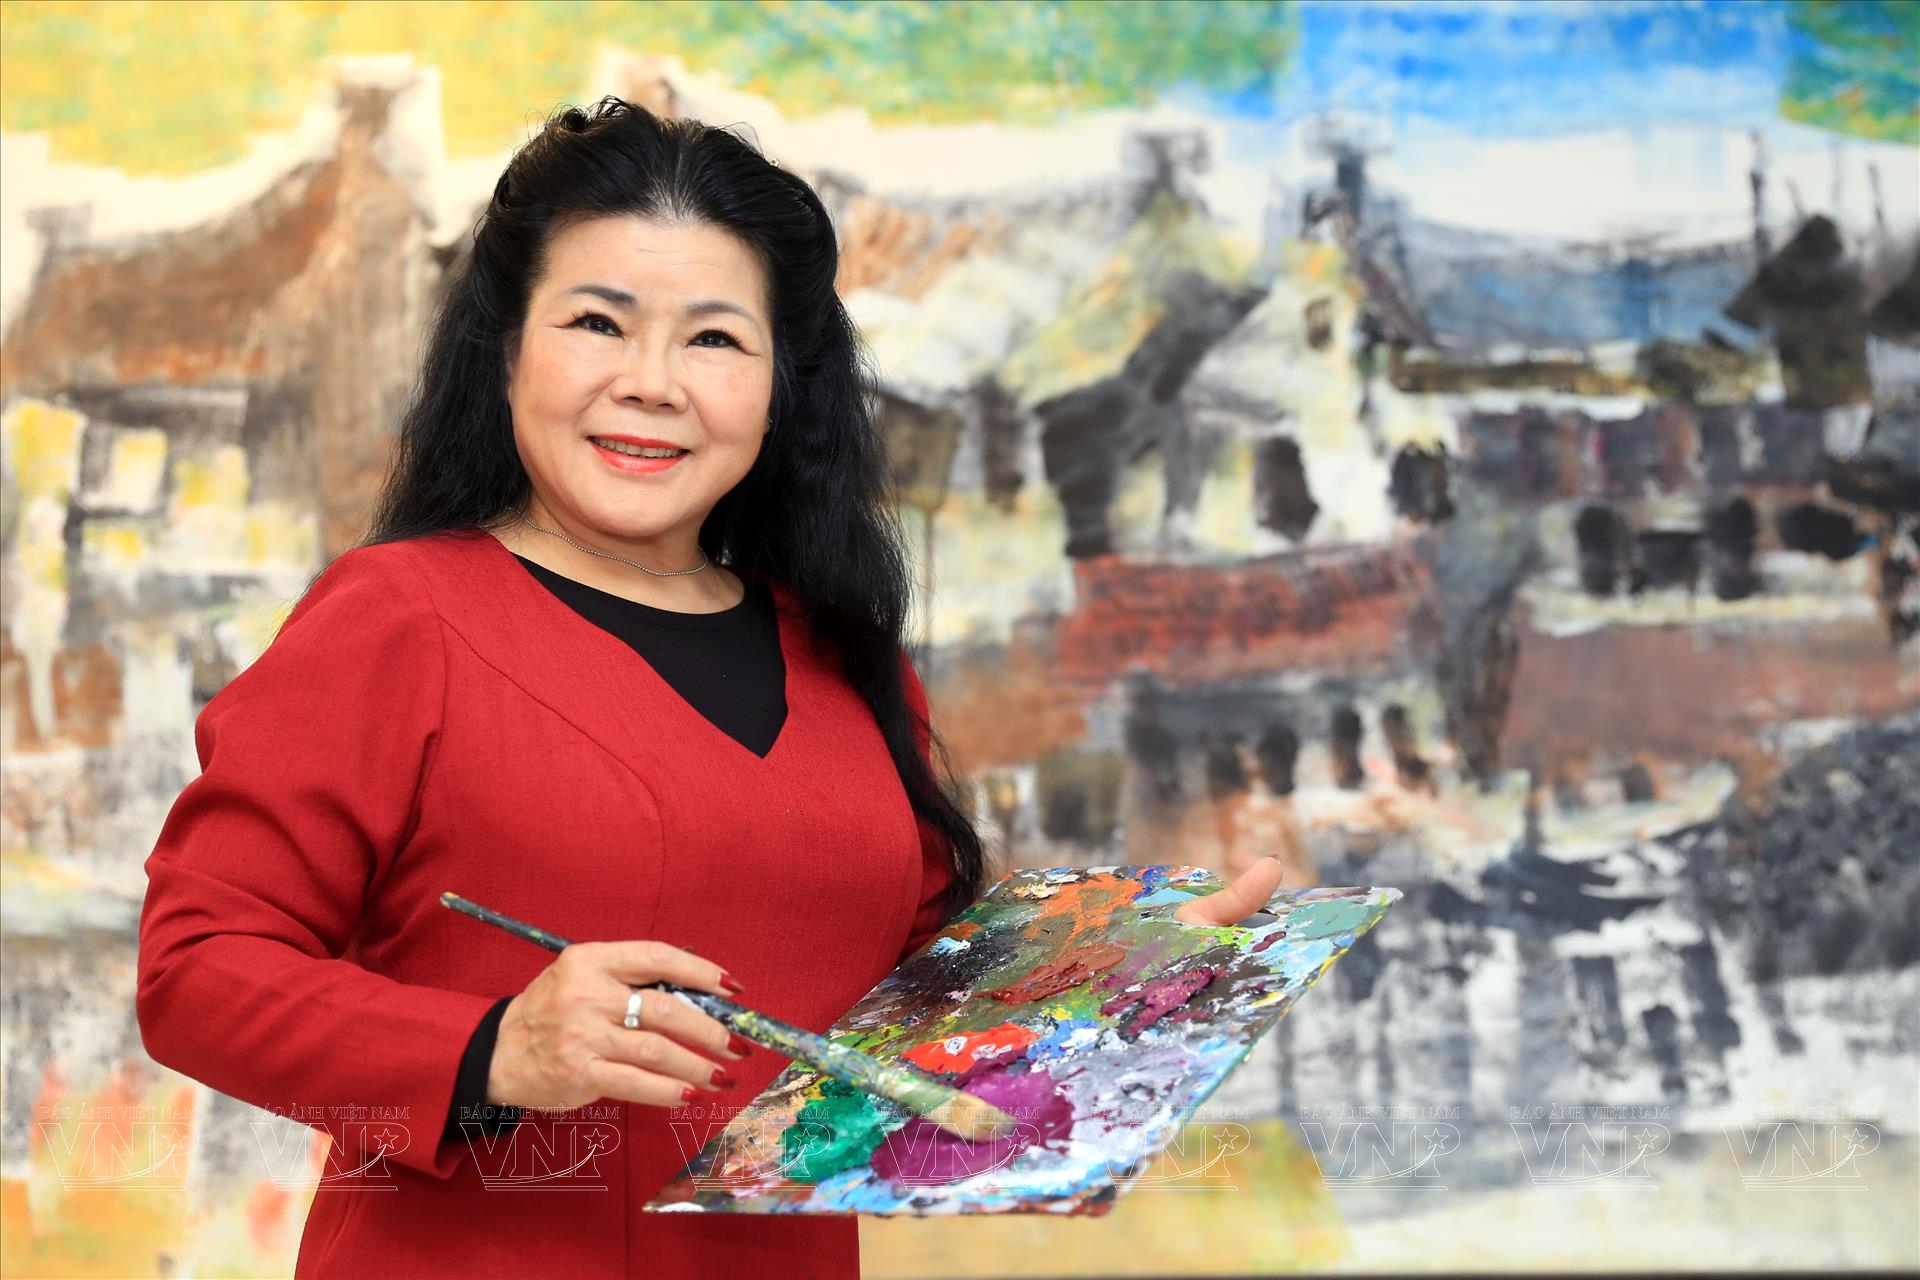 Họa sỹ Văn Dương Thành - người bắc nhịp cầu văn hóa bằng hội họa